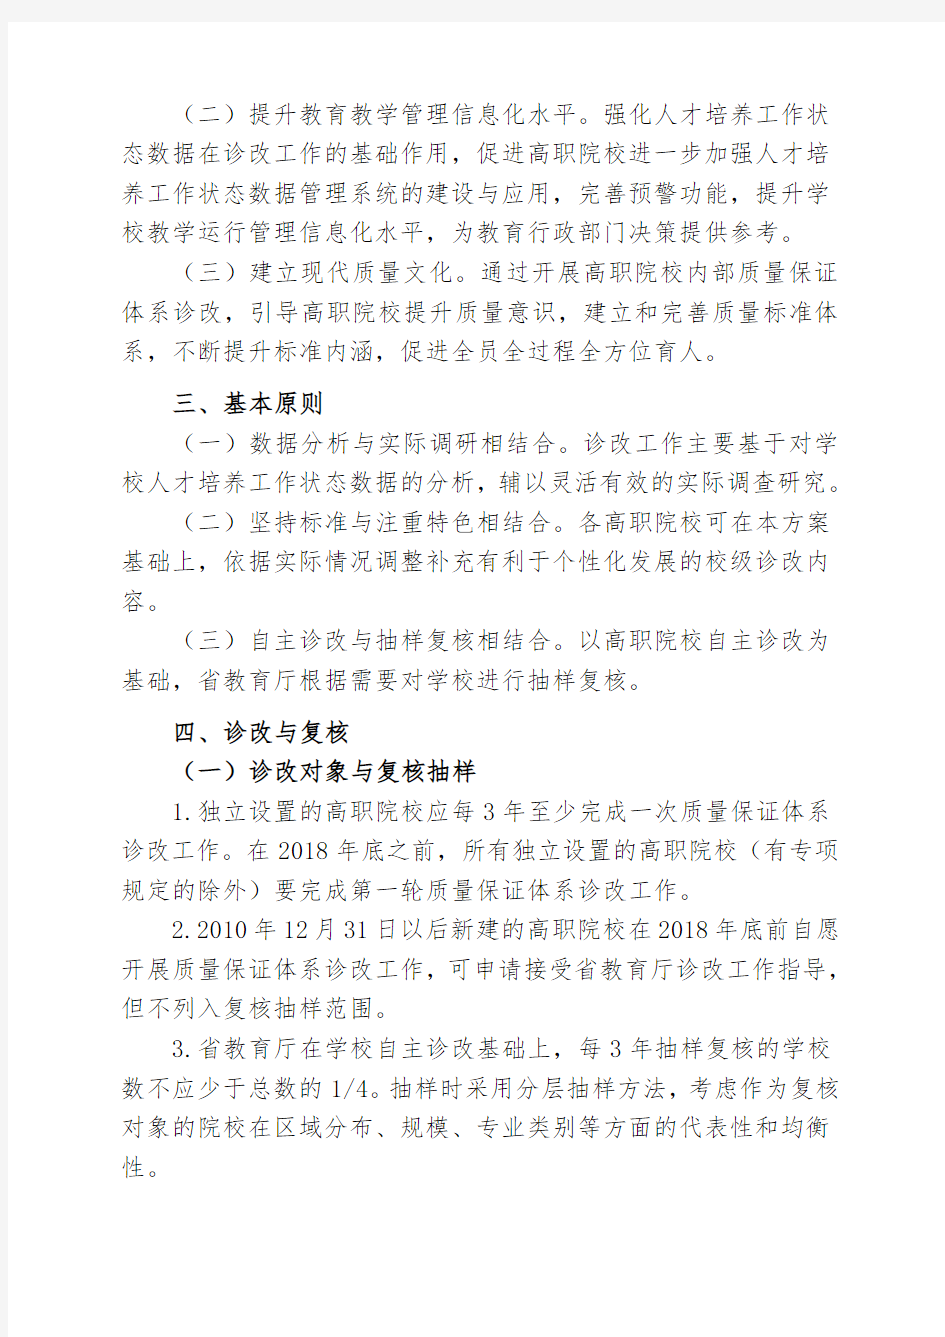 14江西省高等职业院校内部质量保证体系诊断与改进工作实施方案